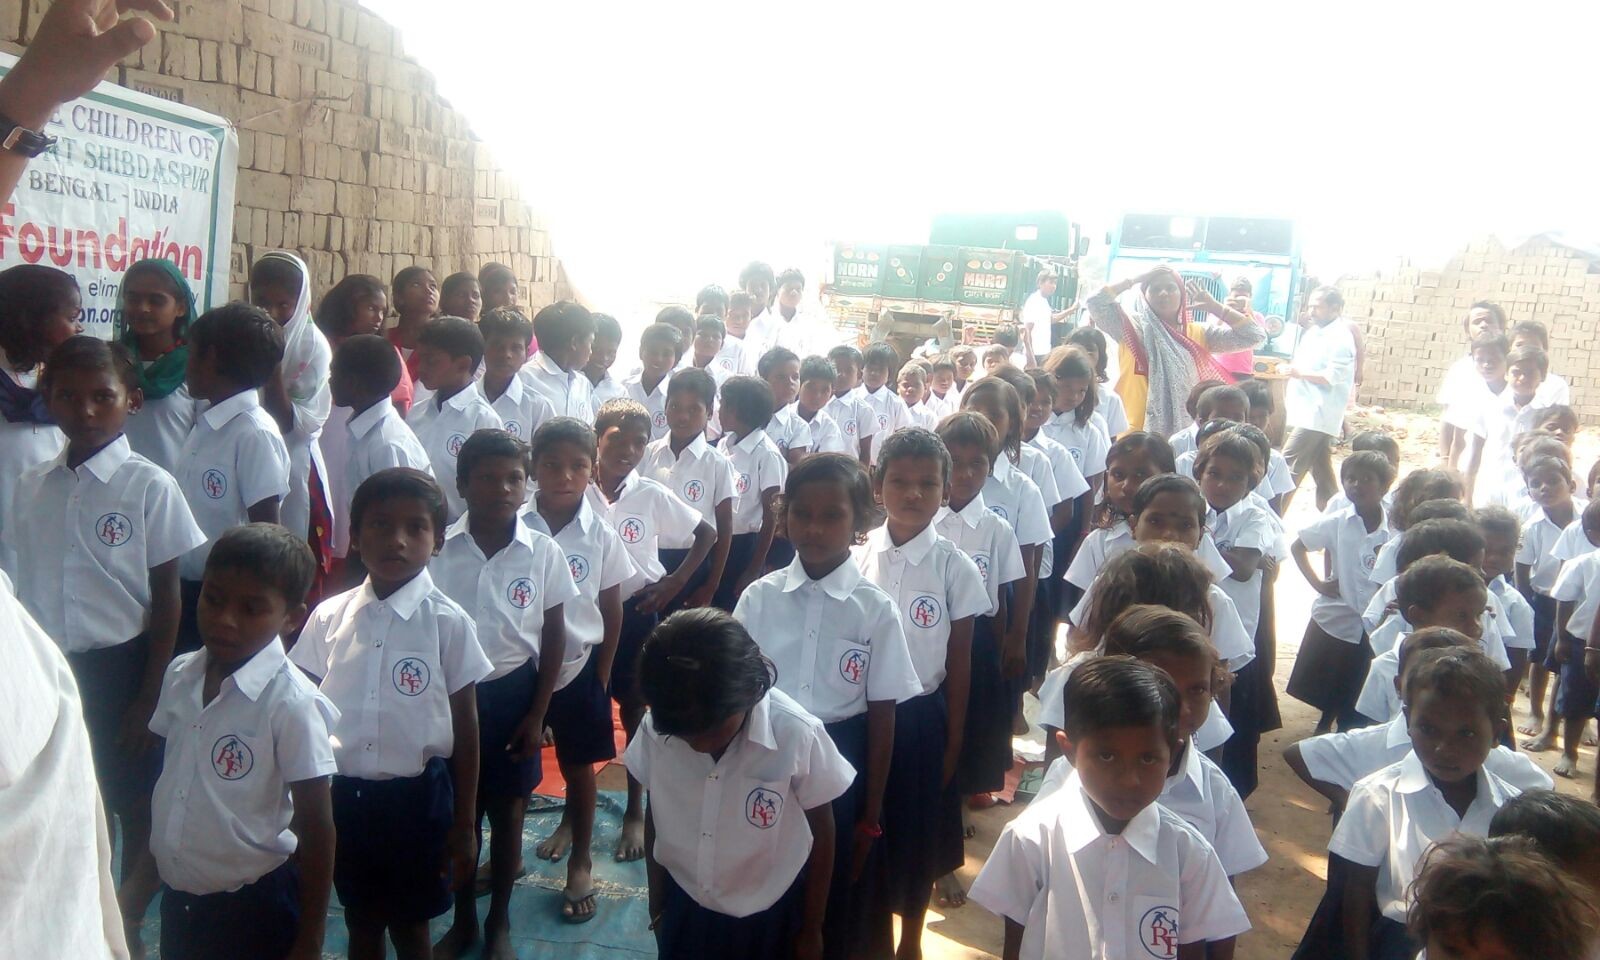 Bricks Field Children School at Shibdaspur - West Bengal